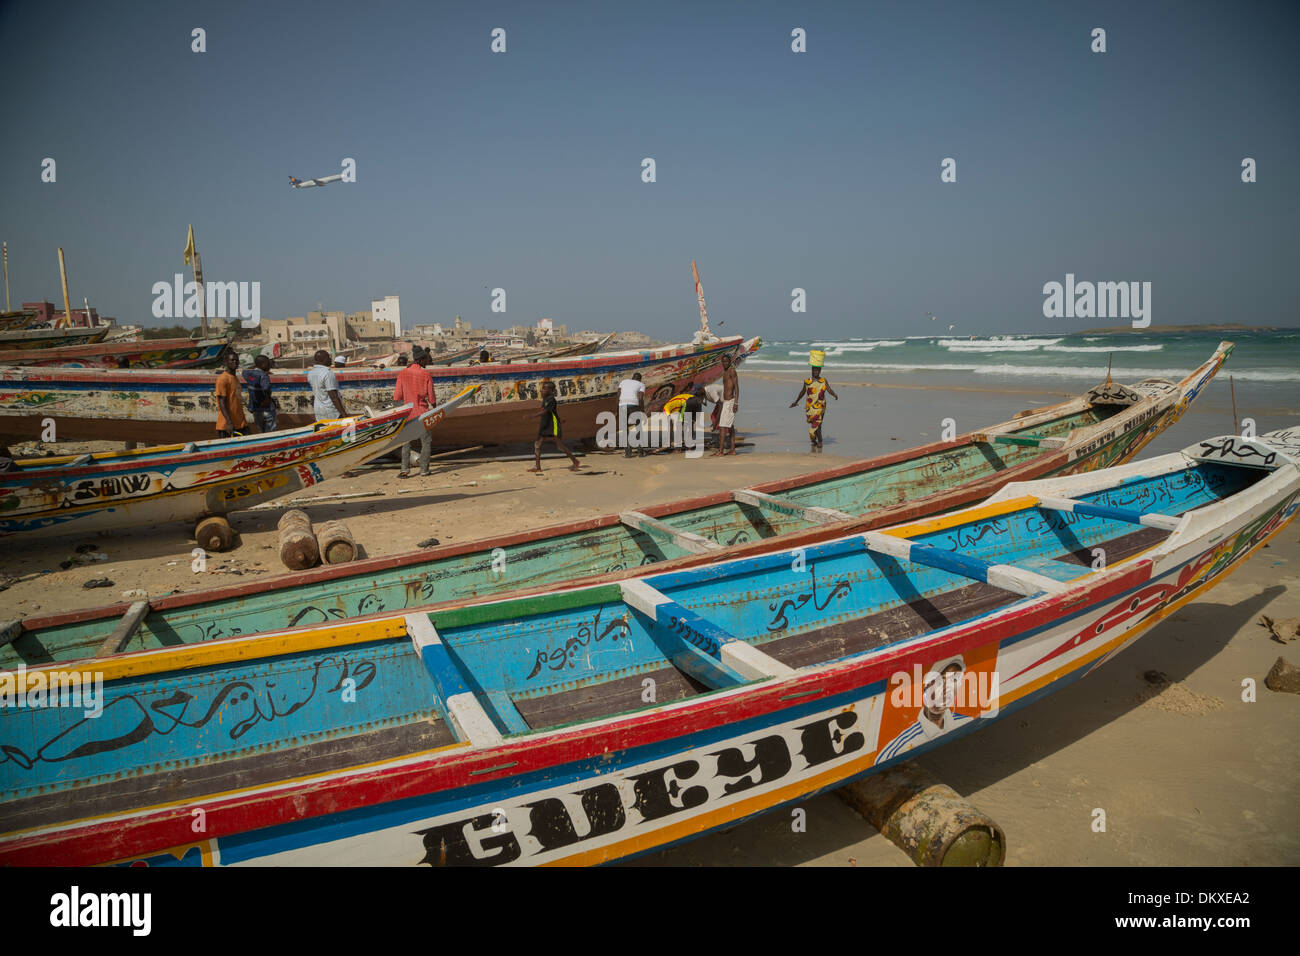 Yaf village de pêcheurs - Dakar, Sénégal, Afrique de l'Ouest. Banque D'Images